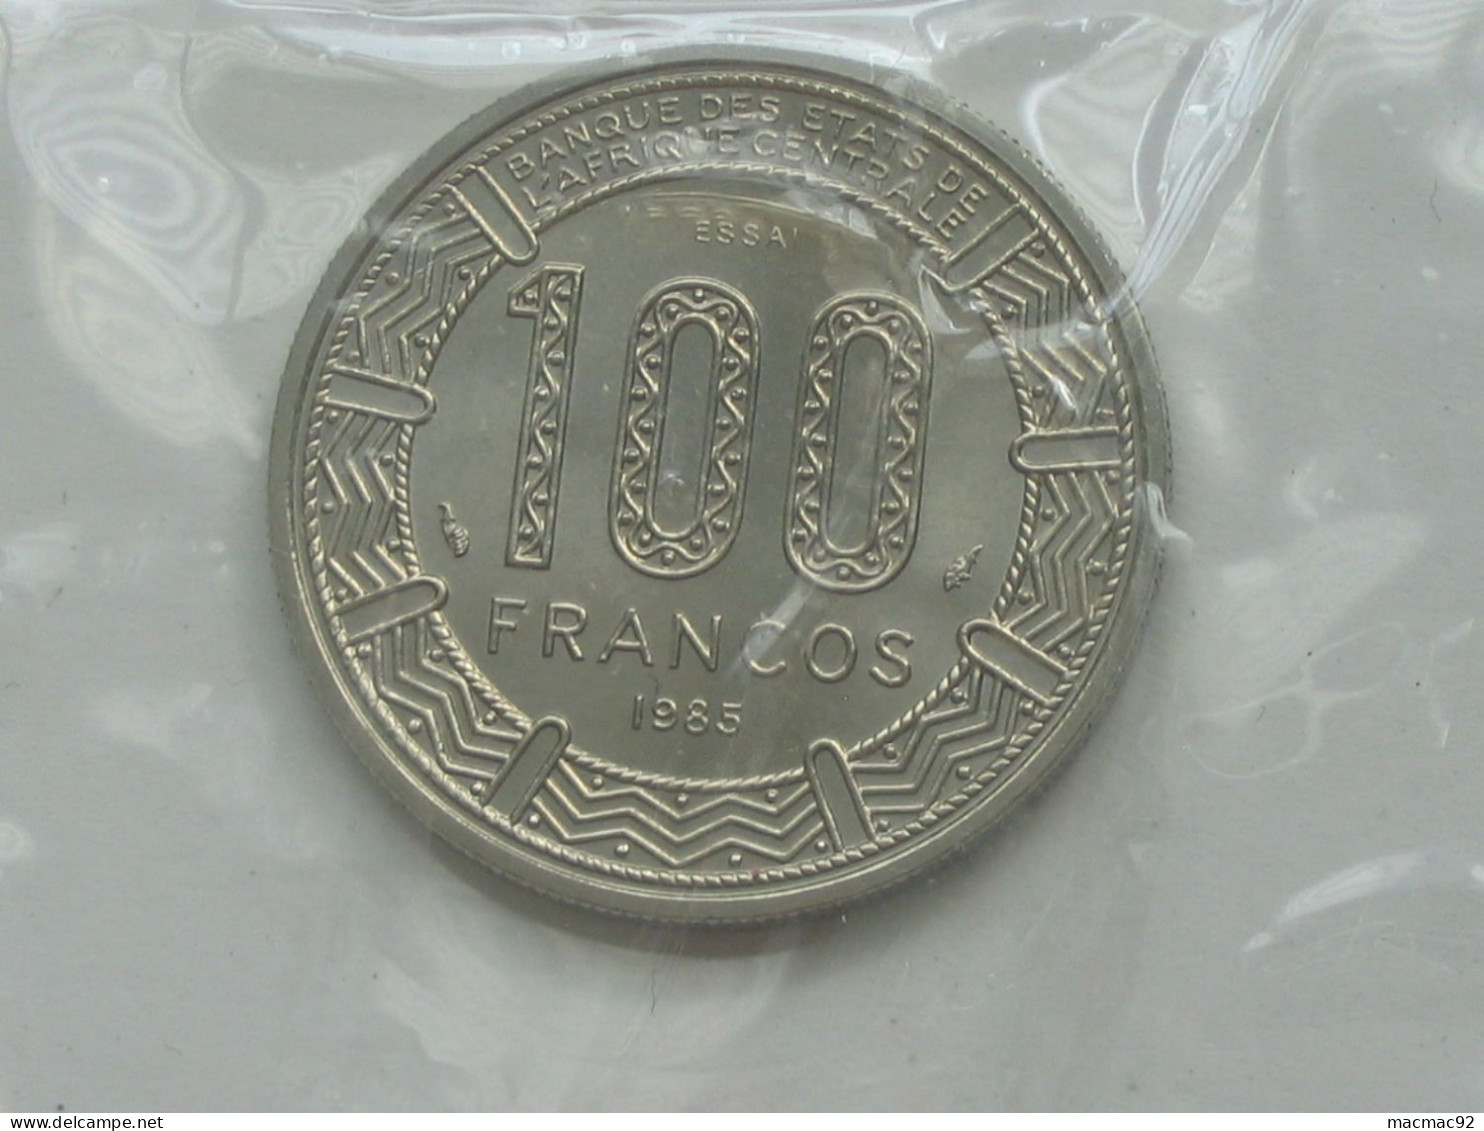 GUINEE EQUATORIALE - Rare ESSAI De 100 Francs 1985 - Banque Des états De L'Afrique Centrale  **** EN ACHAT IMMEDIAT **** - Equatorial Guinea